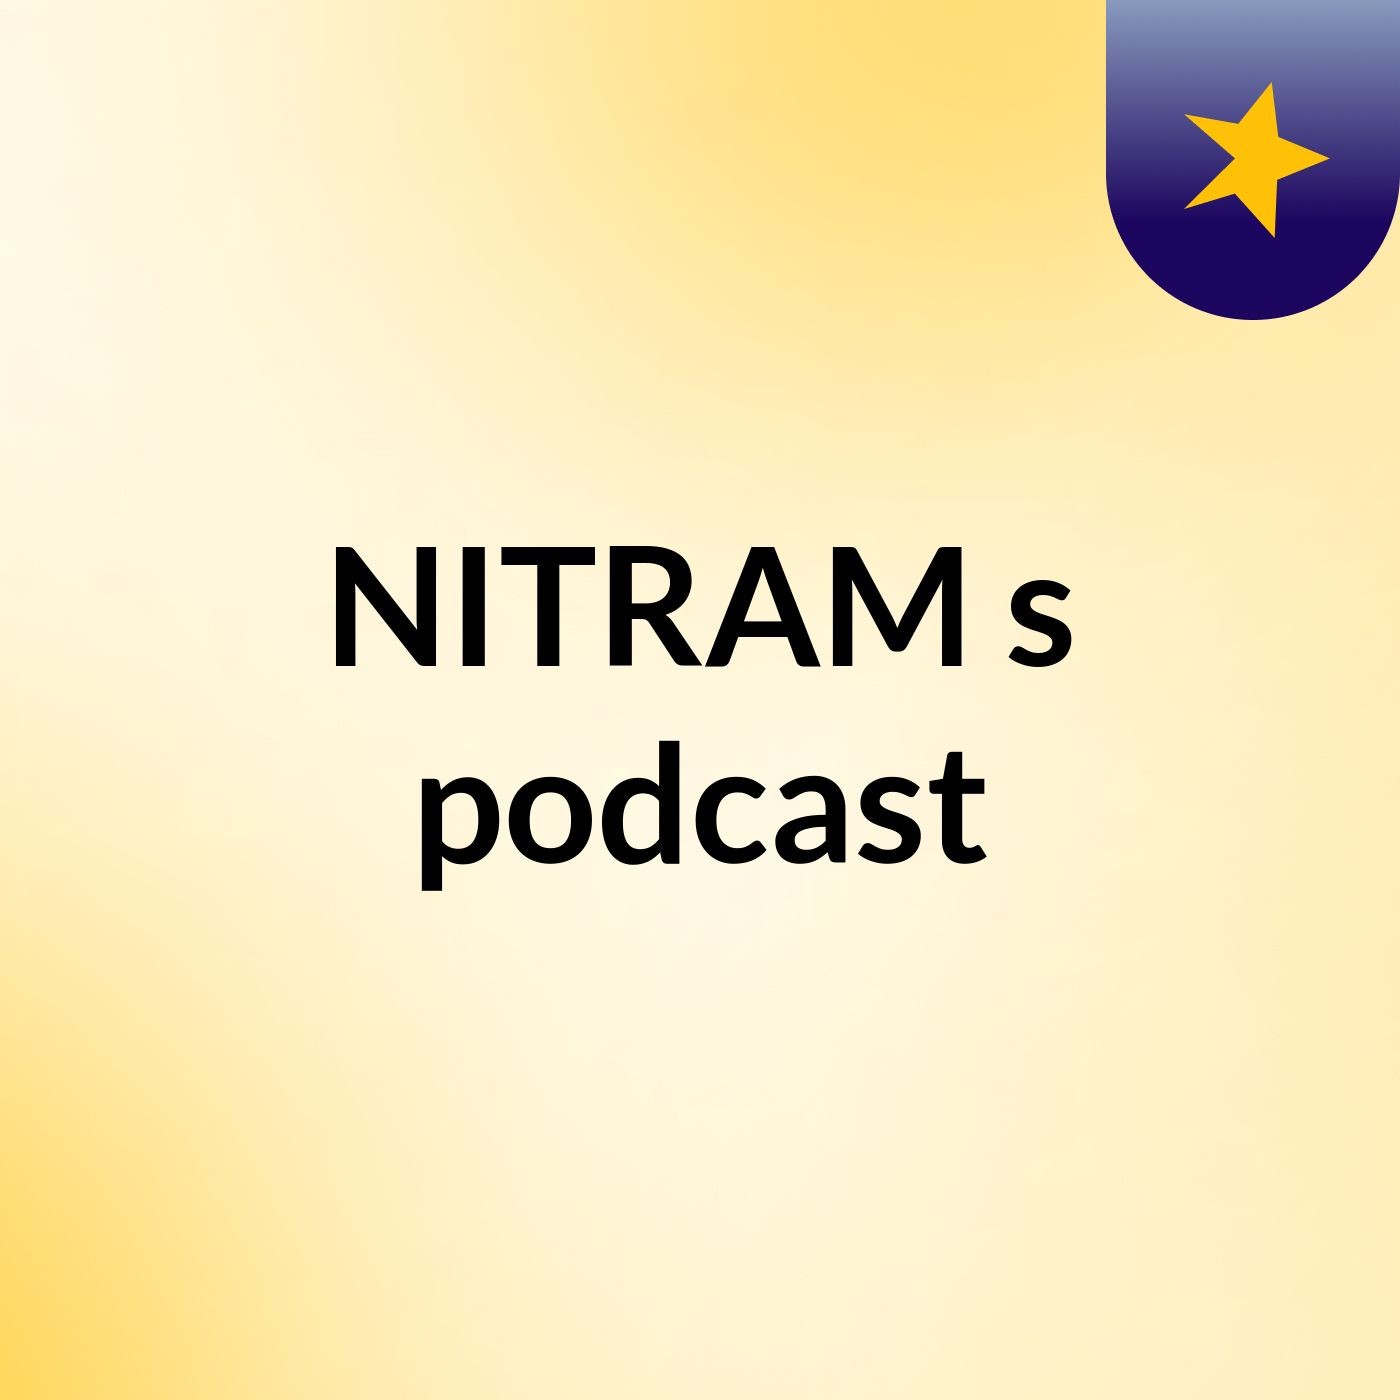 NITRAM's podcast